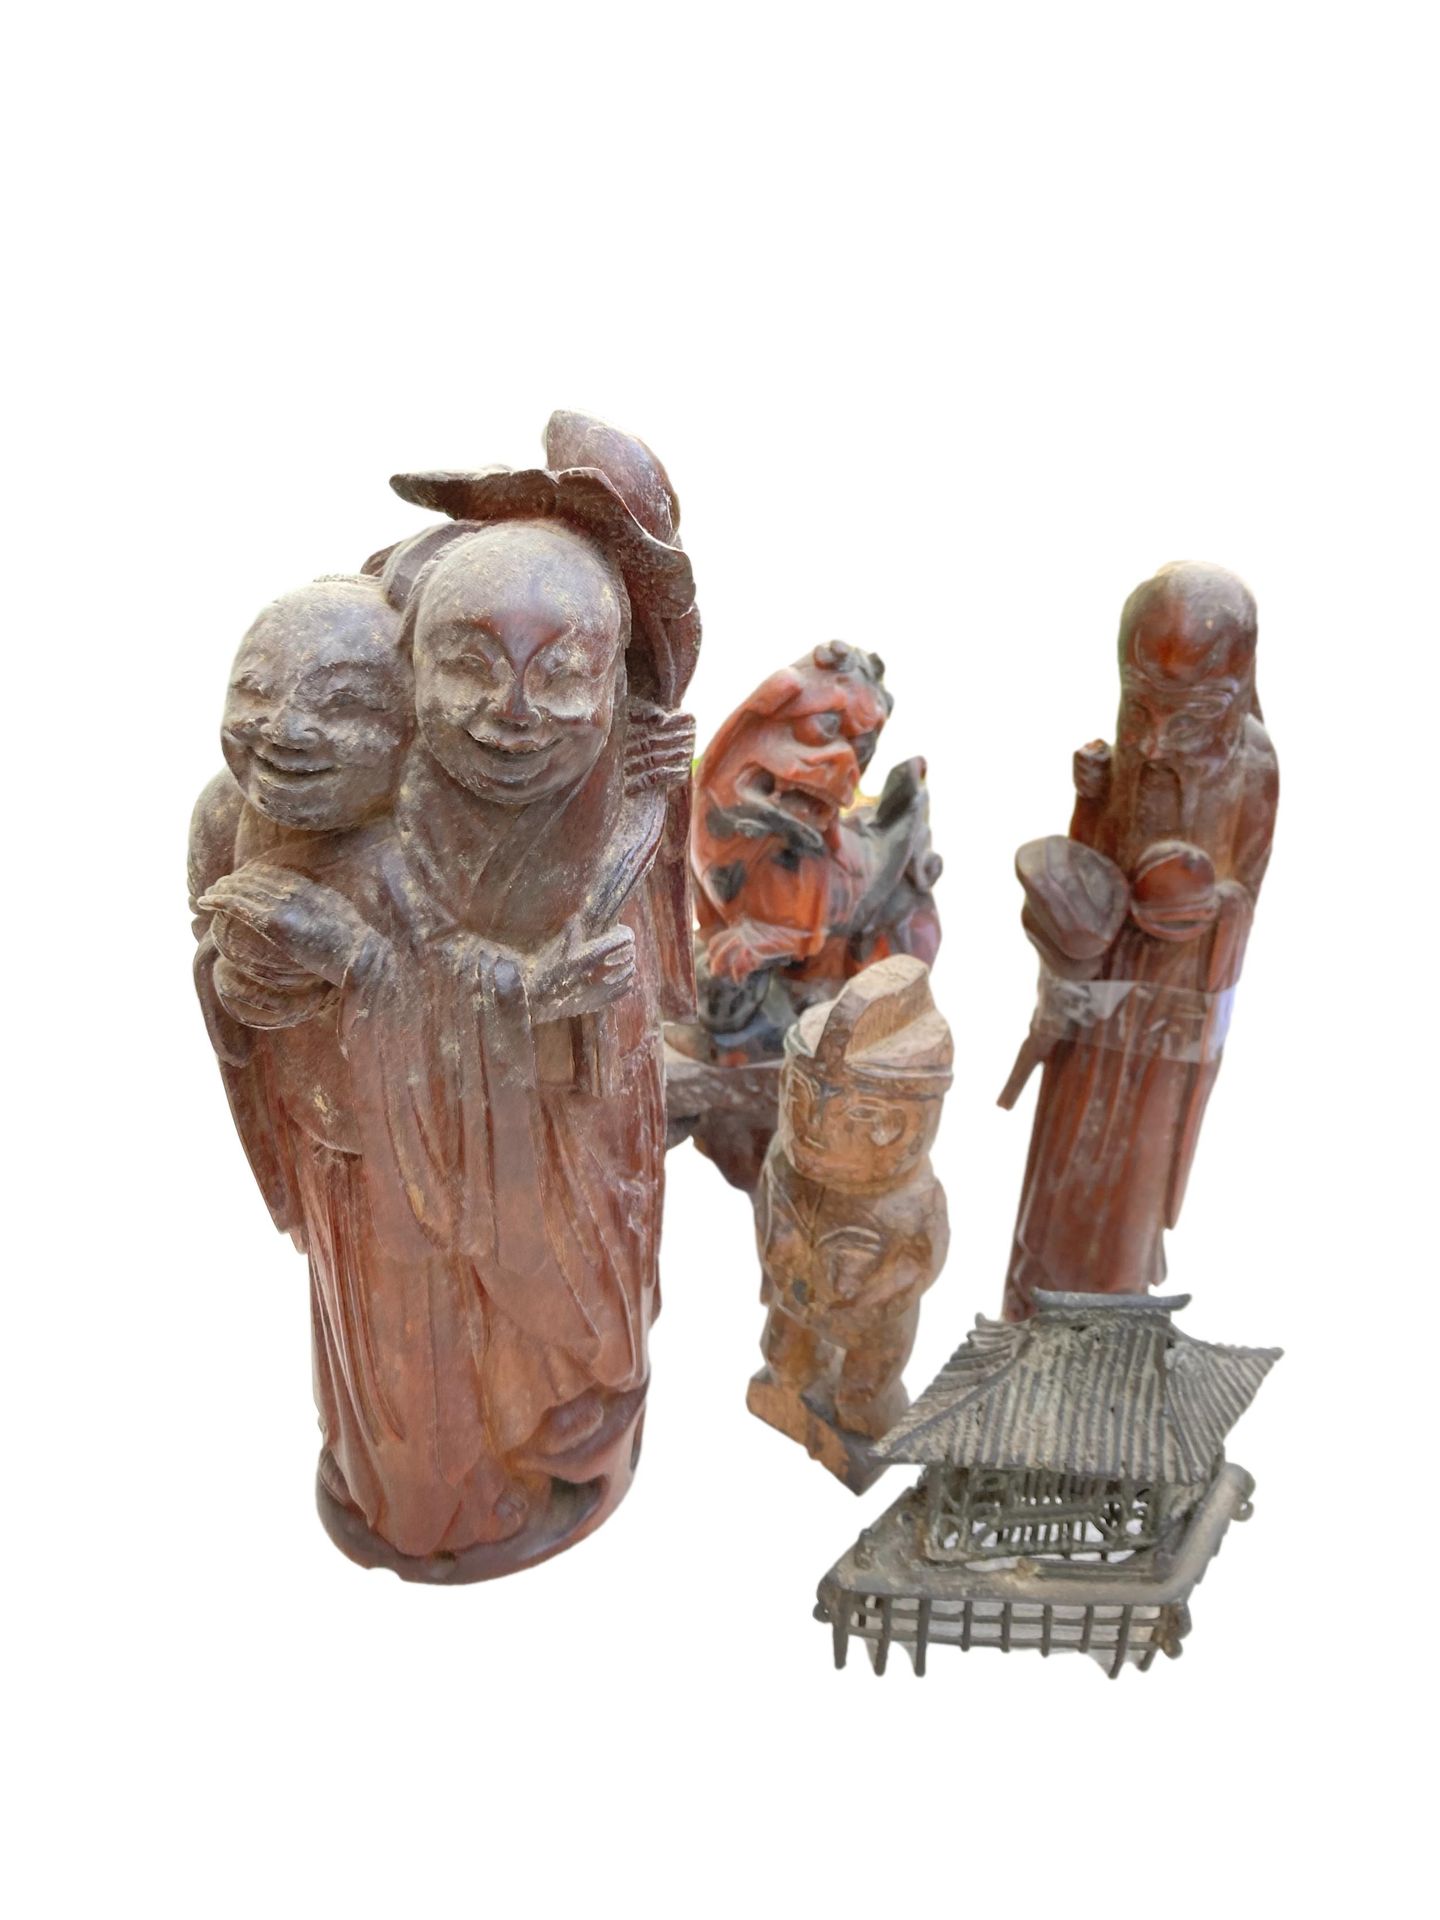 Null 套装包括两个木制老人雕像、一只硬石狗、一座铜塔和一个非洲雕像